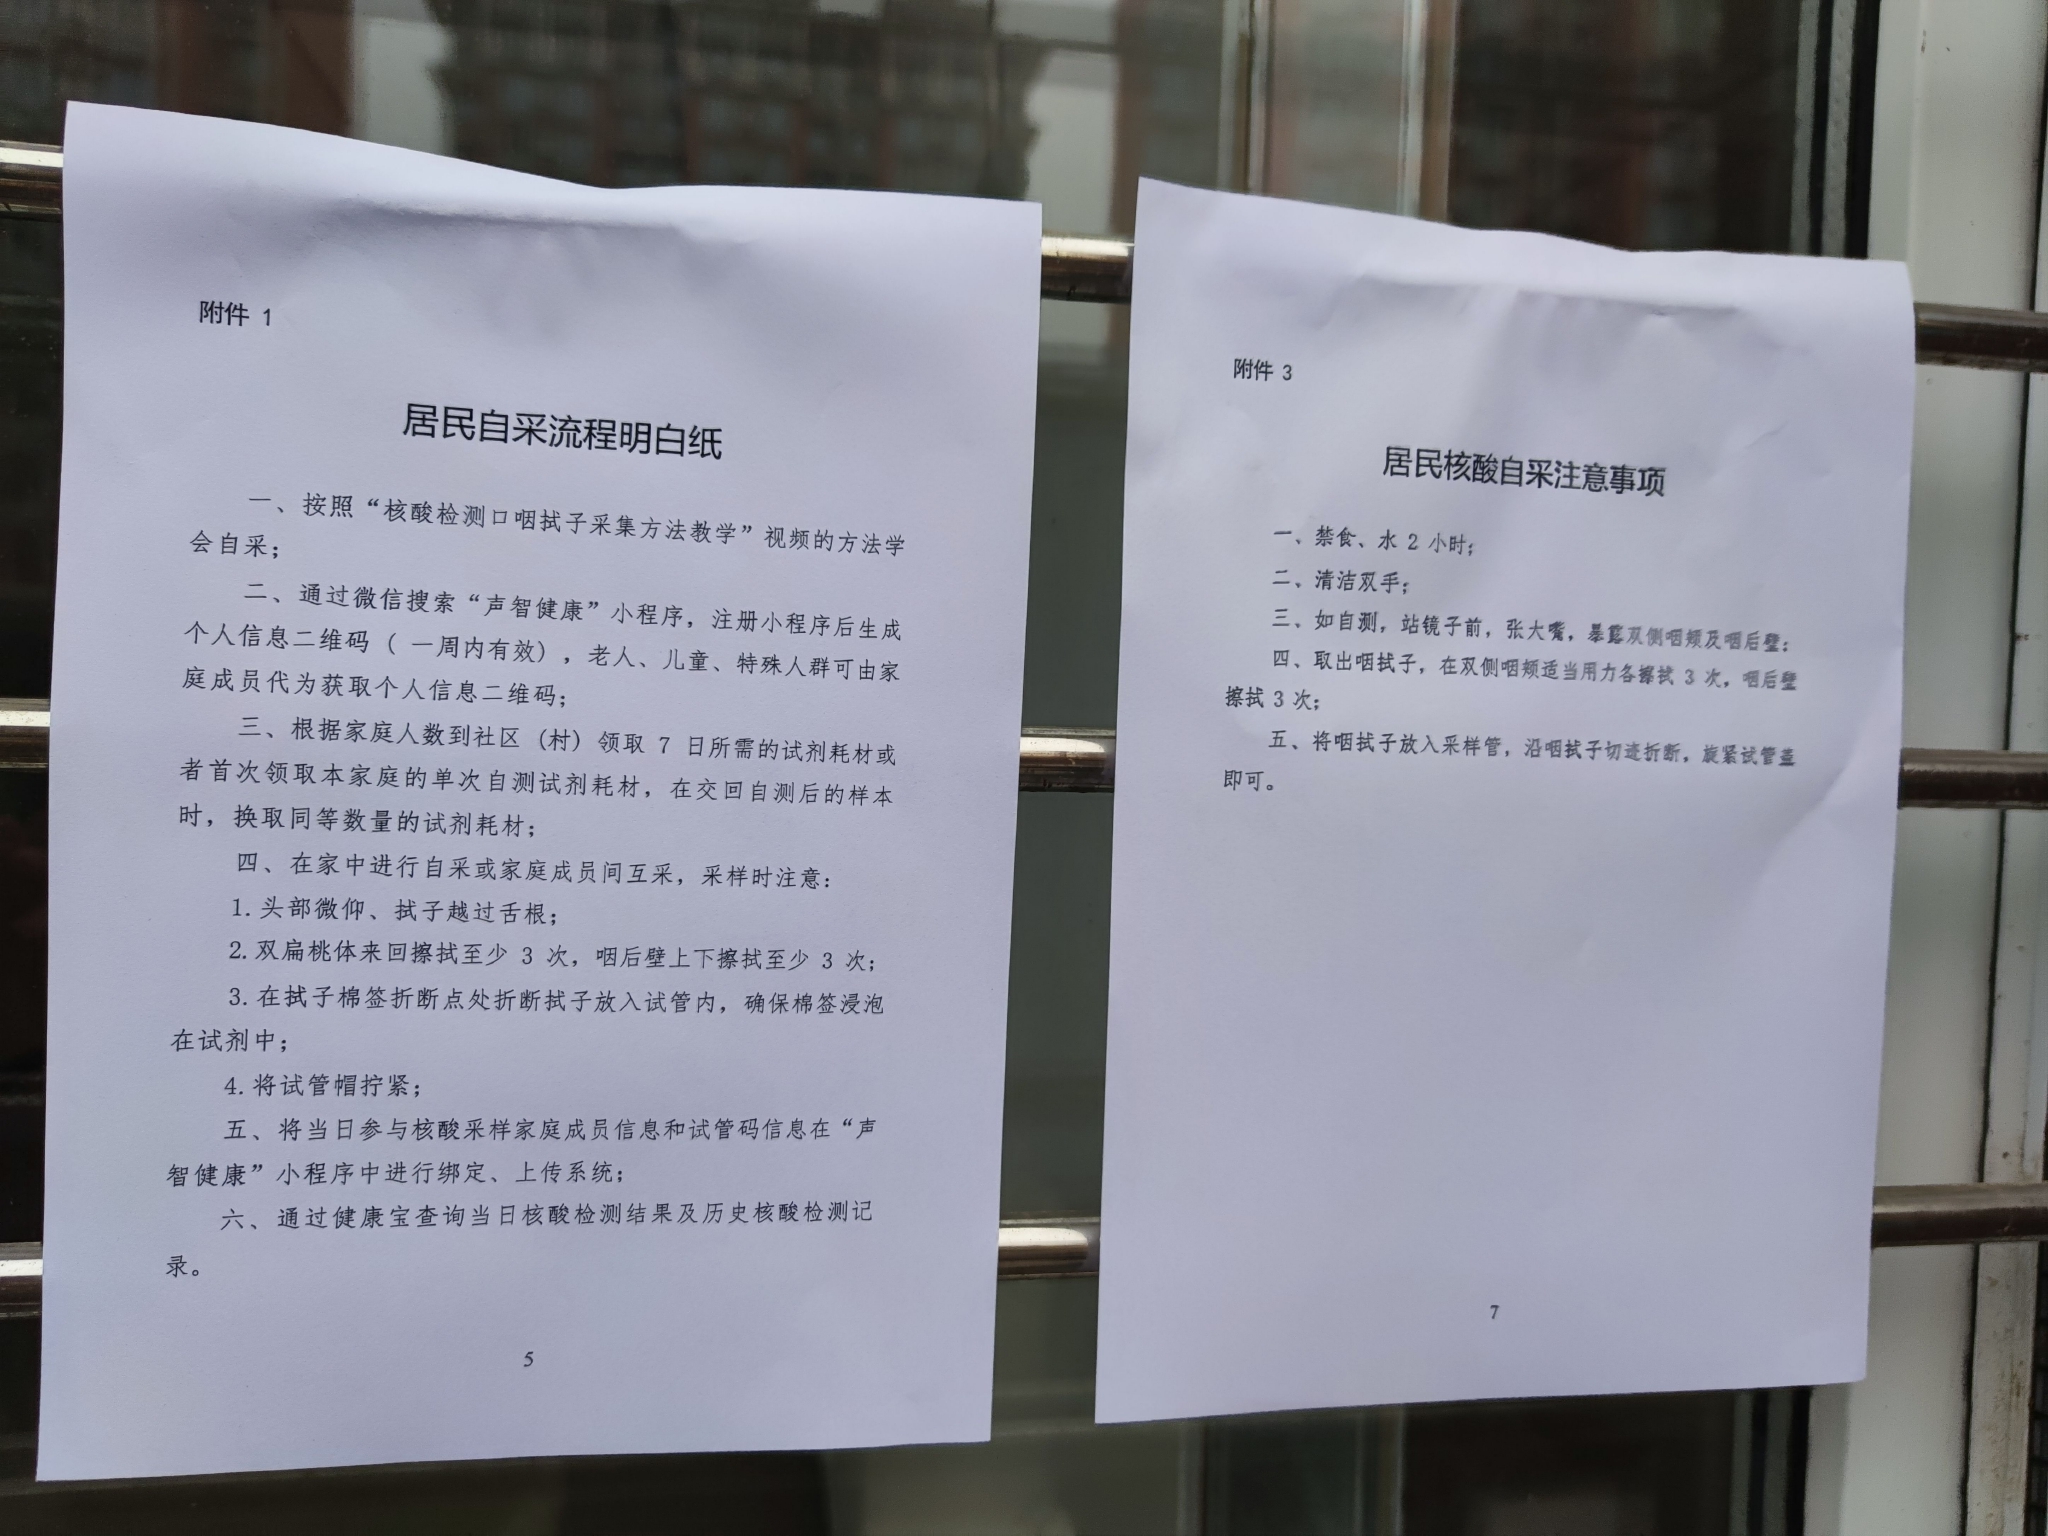 北京丰台，一处核酸自采物资取样窗口边贴着“居民自采流程明白纸”“居民核酸自采注意事项”。  新京报记者 王景曦 摄